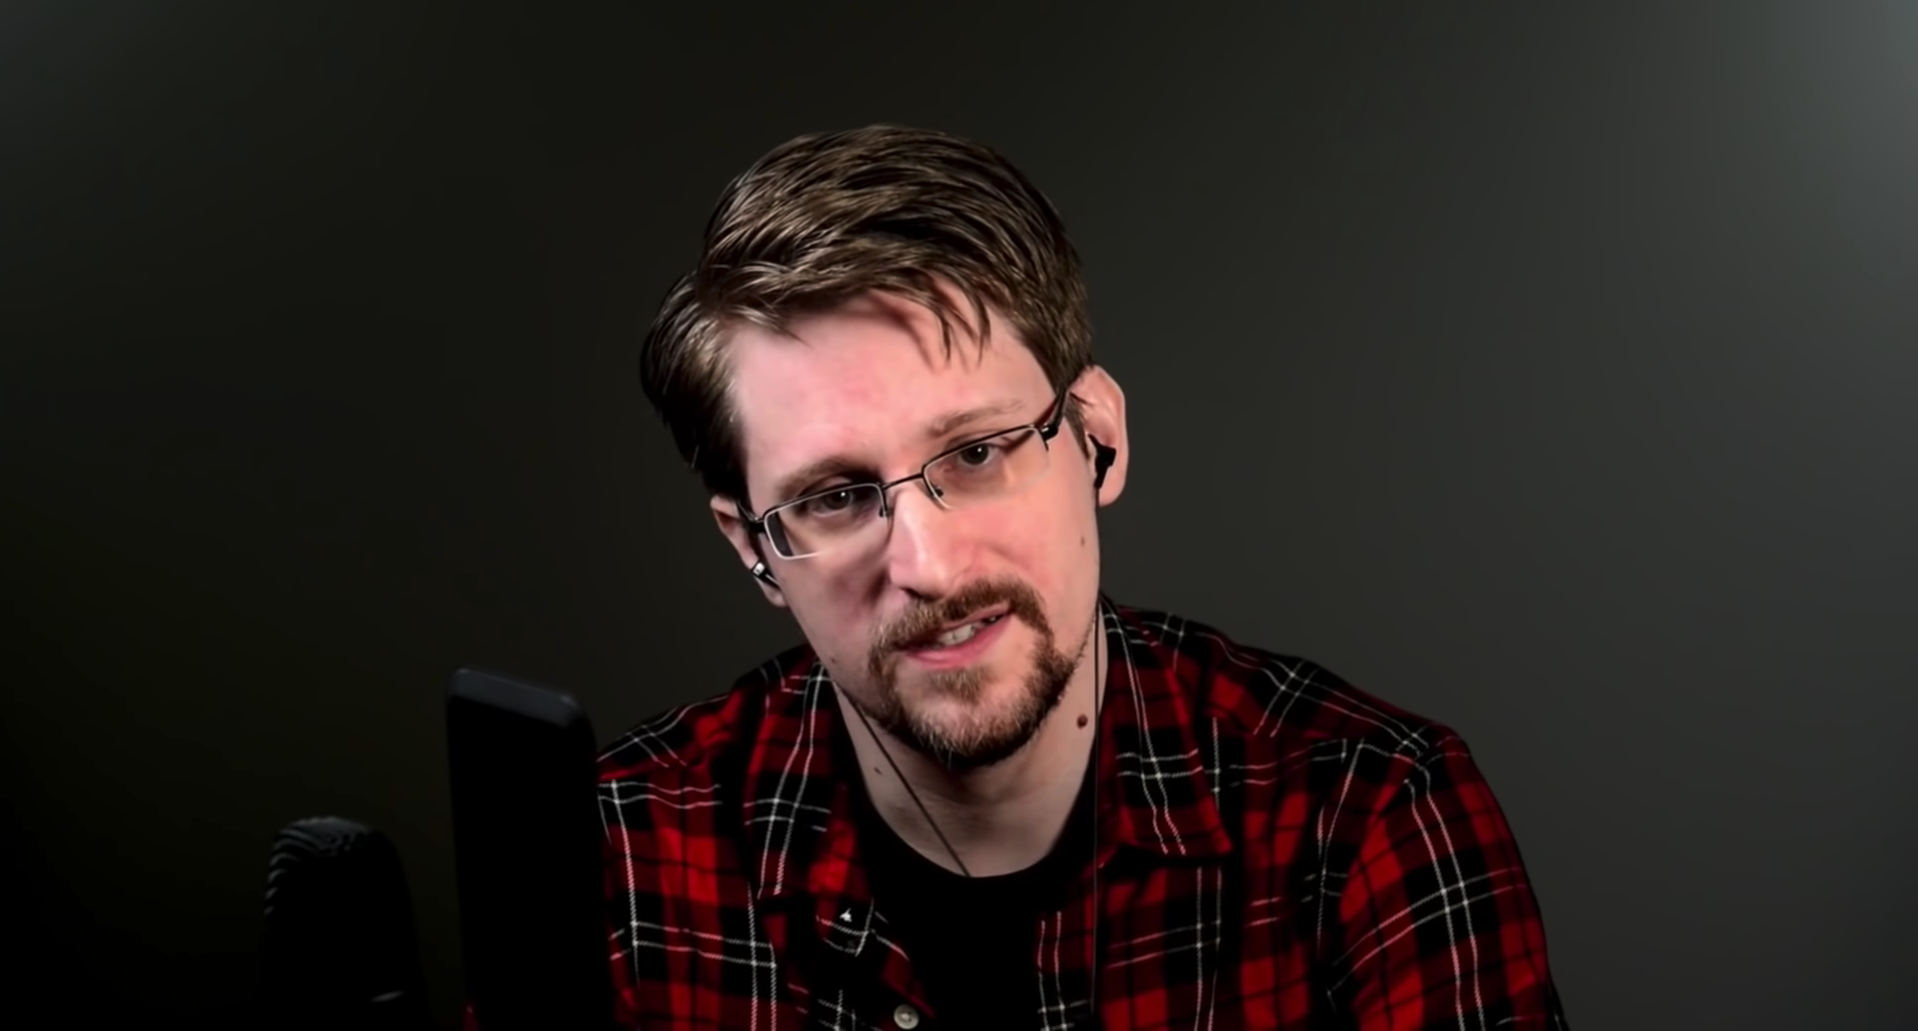 Edward Snowden on Joe Rogan